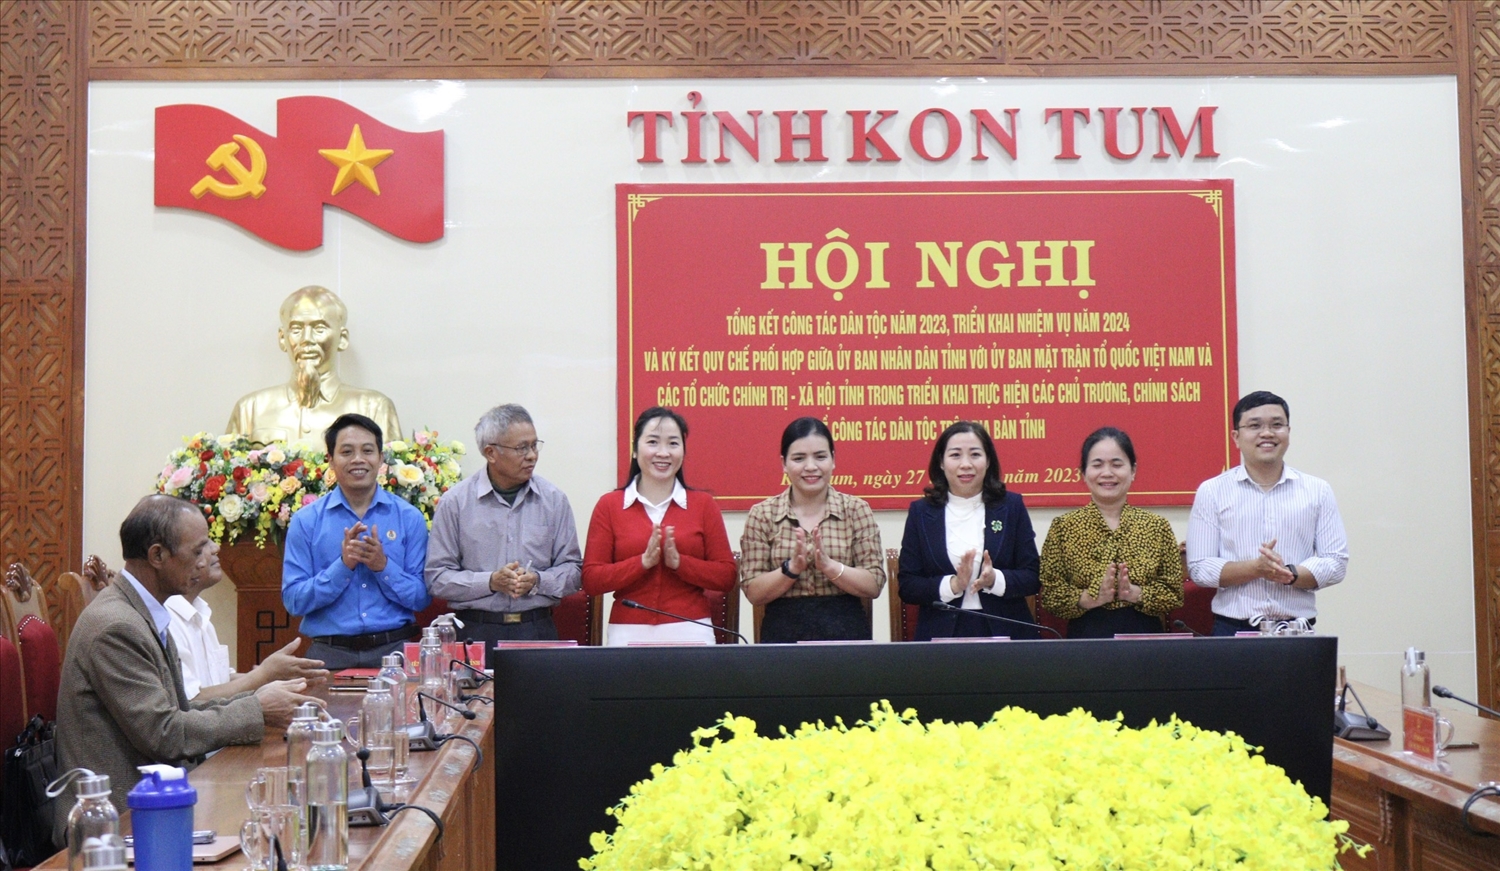 Ký kết Quy chế phối hợp triển khai thực hiện các chủ trương, chính sách về công tác dân tộc trên địa bàn tỉnh Kon Tum